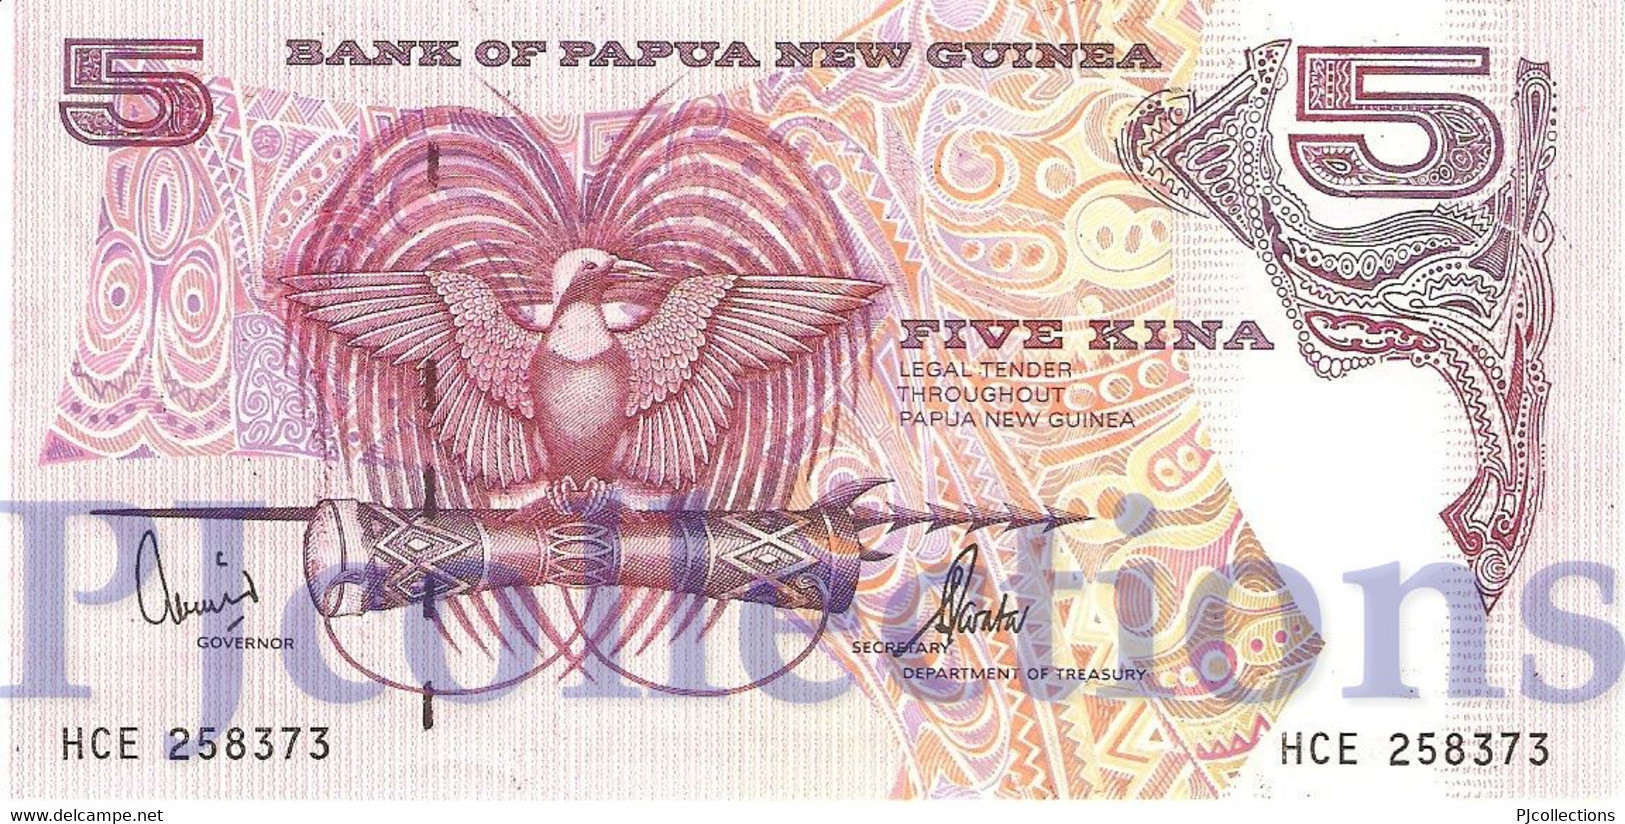 PAPUA NEW GUINEA 5 KINA 2000 PICK 13d UNC - Papouasie-Nouvelle-Guinée